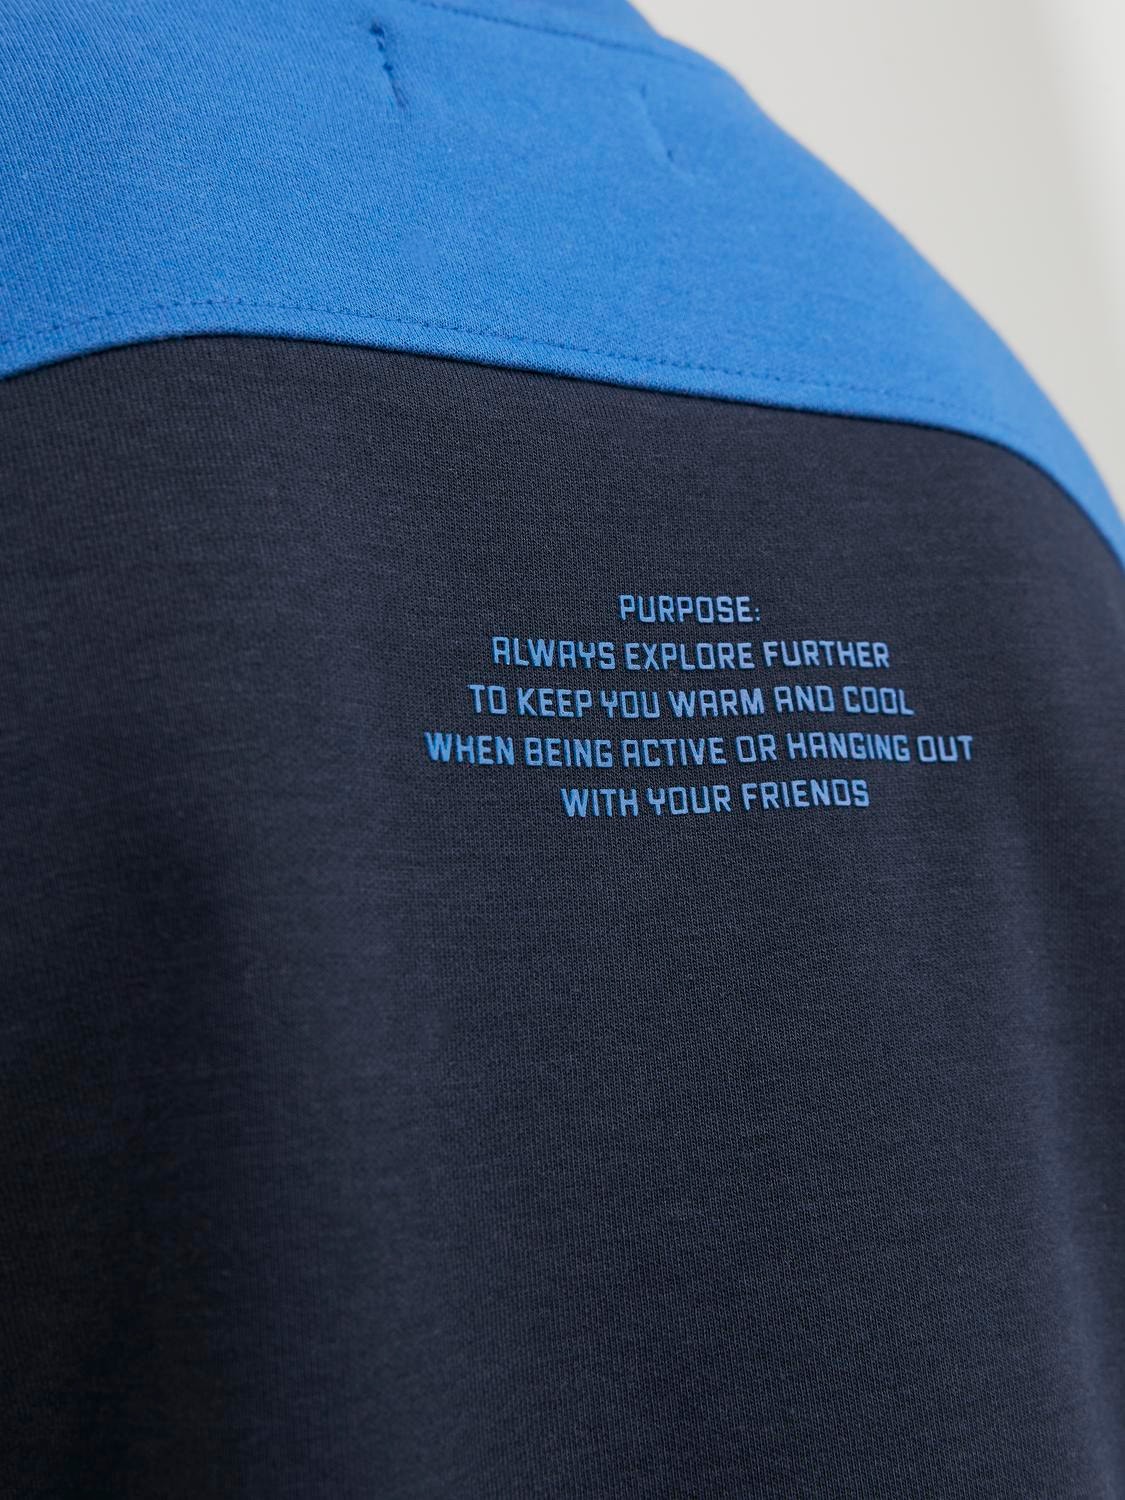 Jack & Jones Gedrukt Sweatshirt met ronde hals Voor jongens -Navy Blazer - 12247750